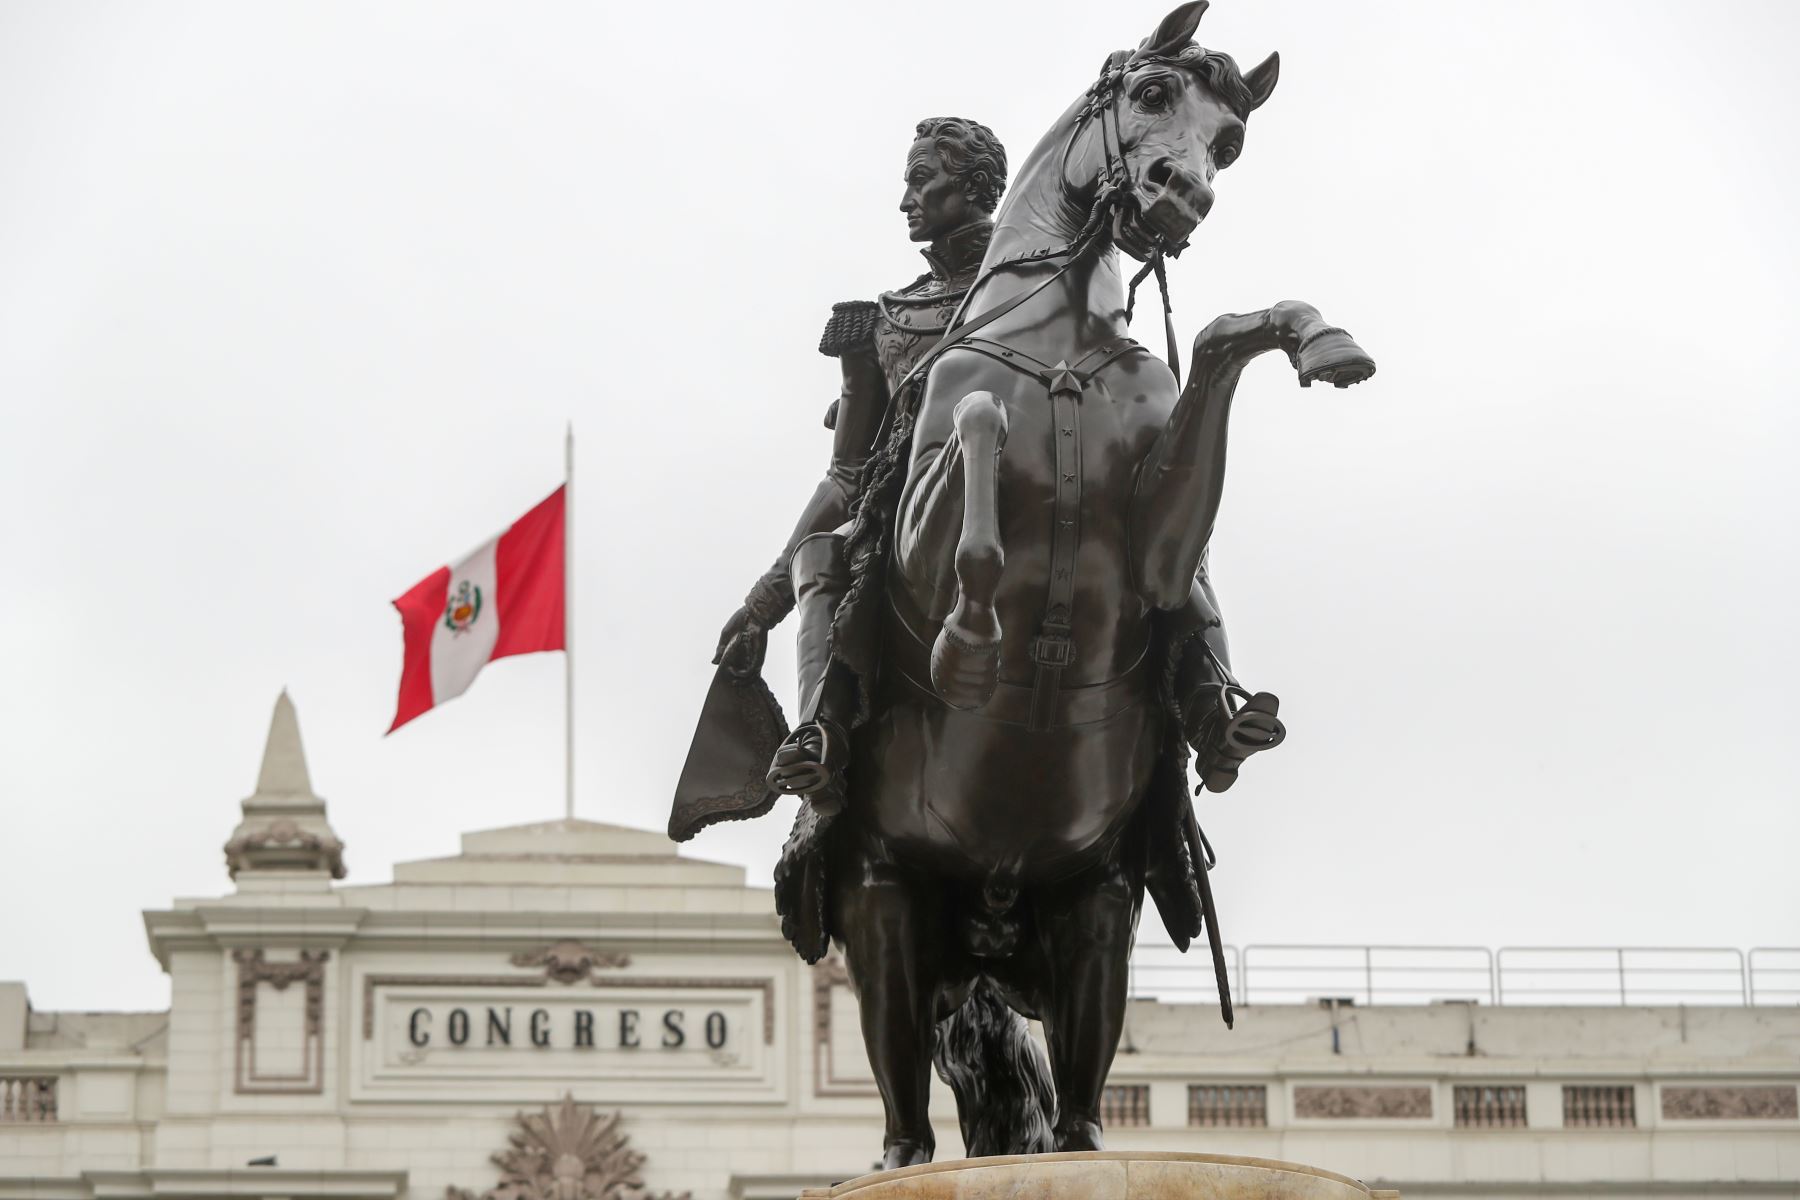 La presidenta del Congreso, Mirtha Vásquez, junto al alcalde de Lima, Jorge Muñoz, develan el monumento a Simón Bolívar ubicado en la Plaza de la Inquisición del Palacio Legislativo. Foto: Congreso